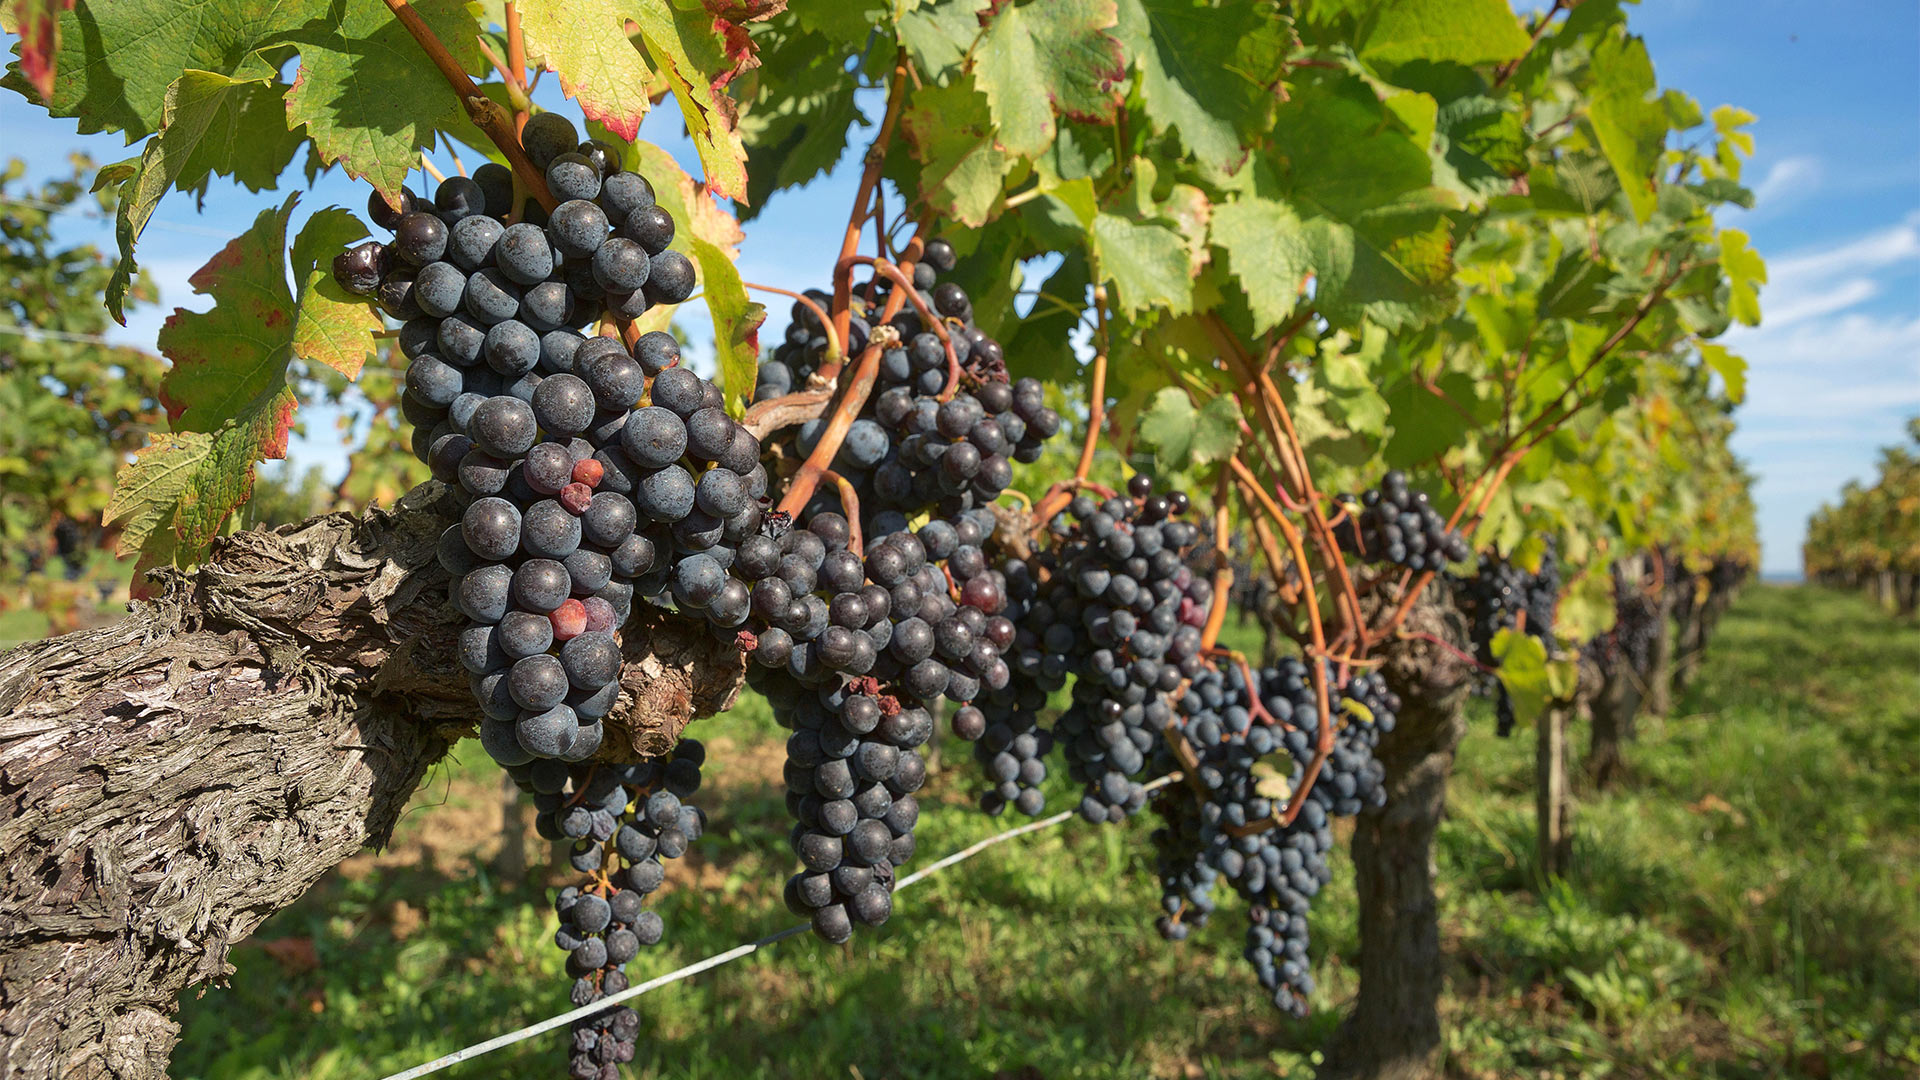 Weinreben in der Provence, Frankreich | picture alliance / Zoonar